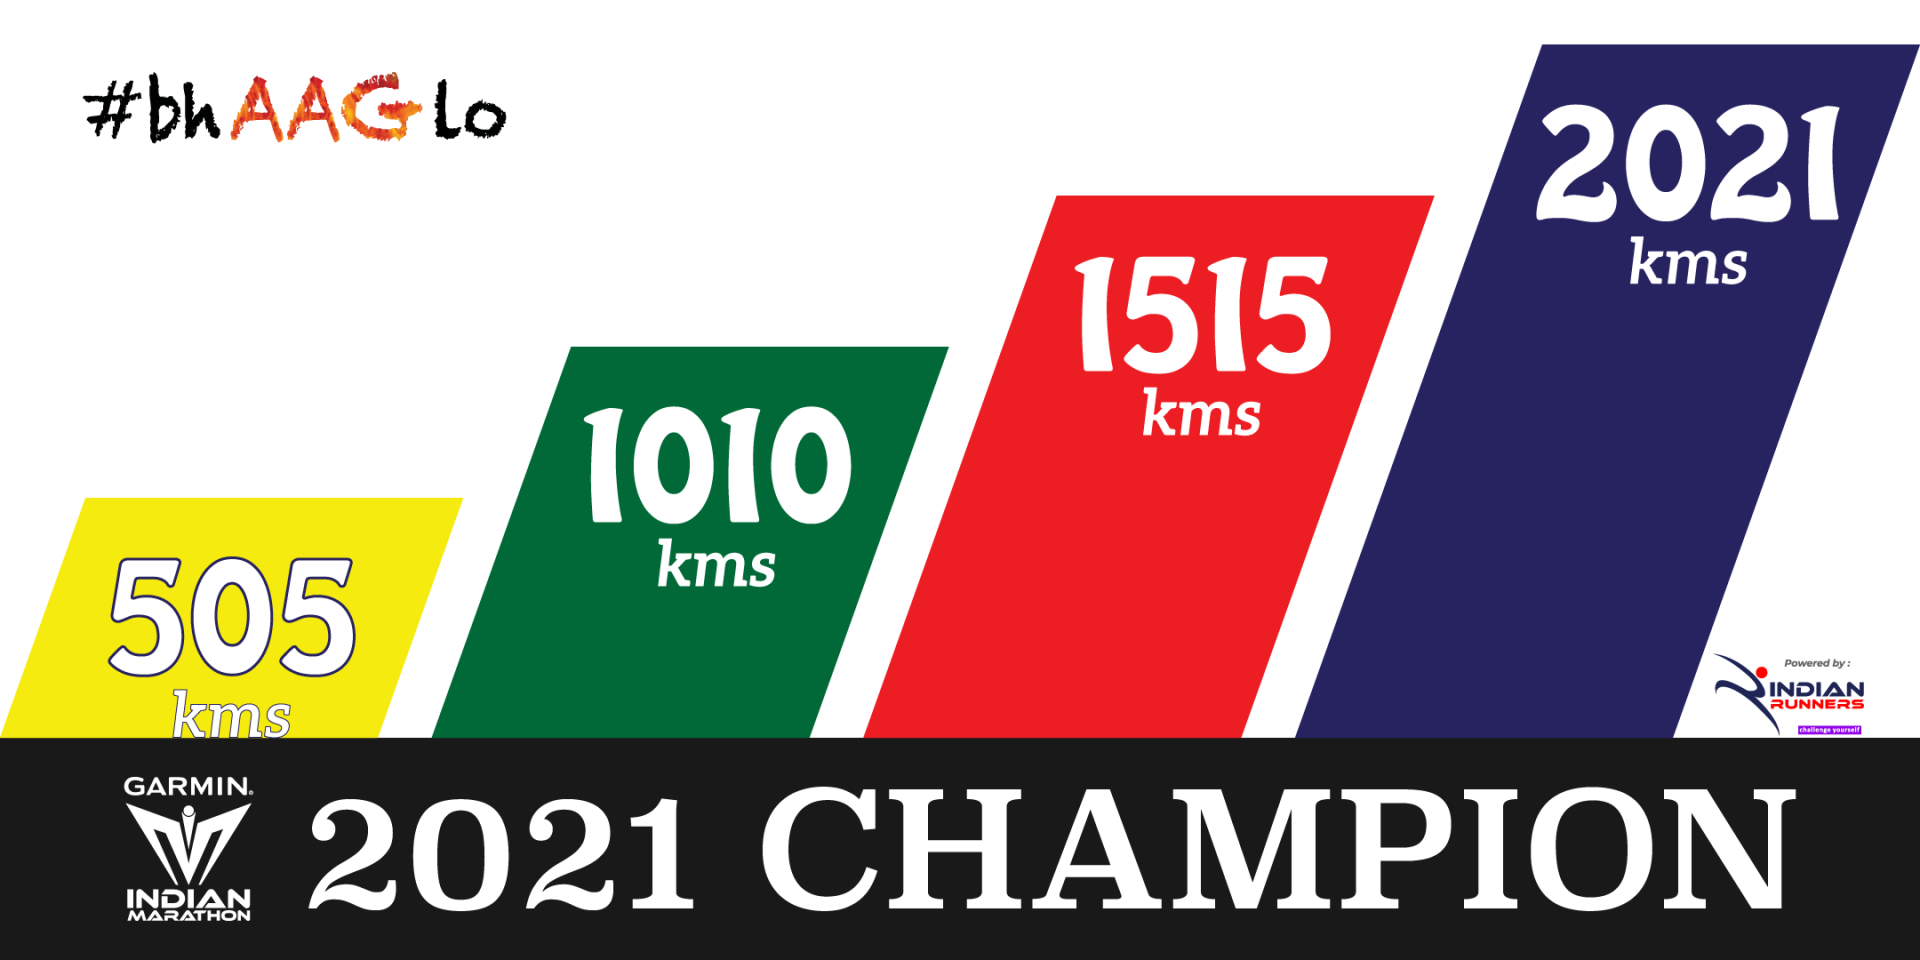 Champion 2021 image